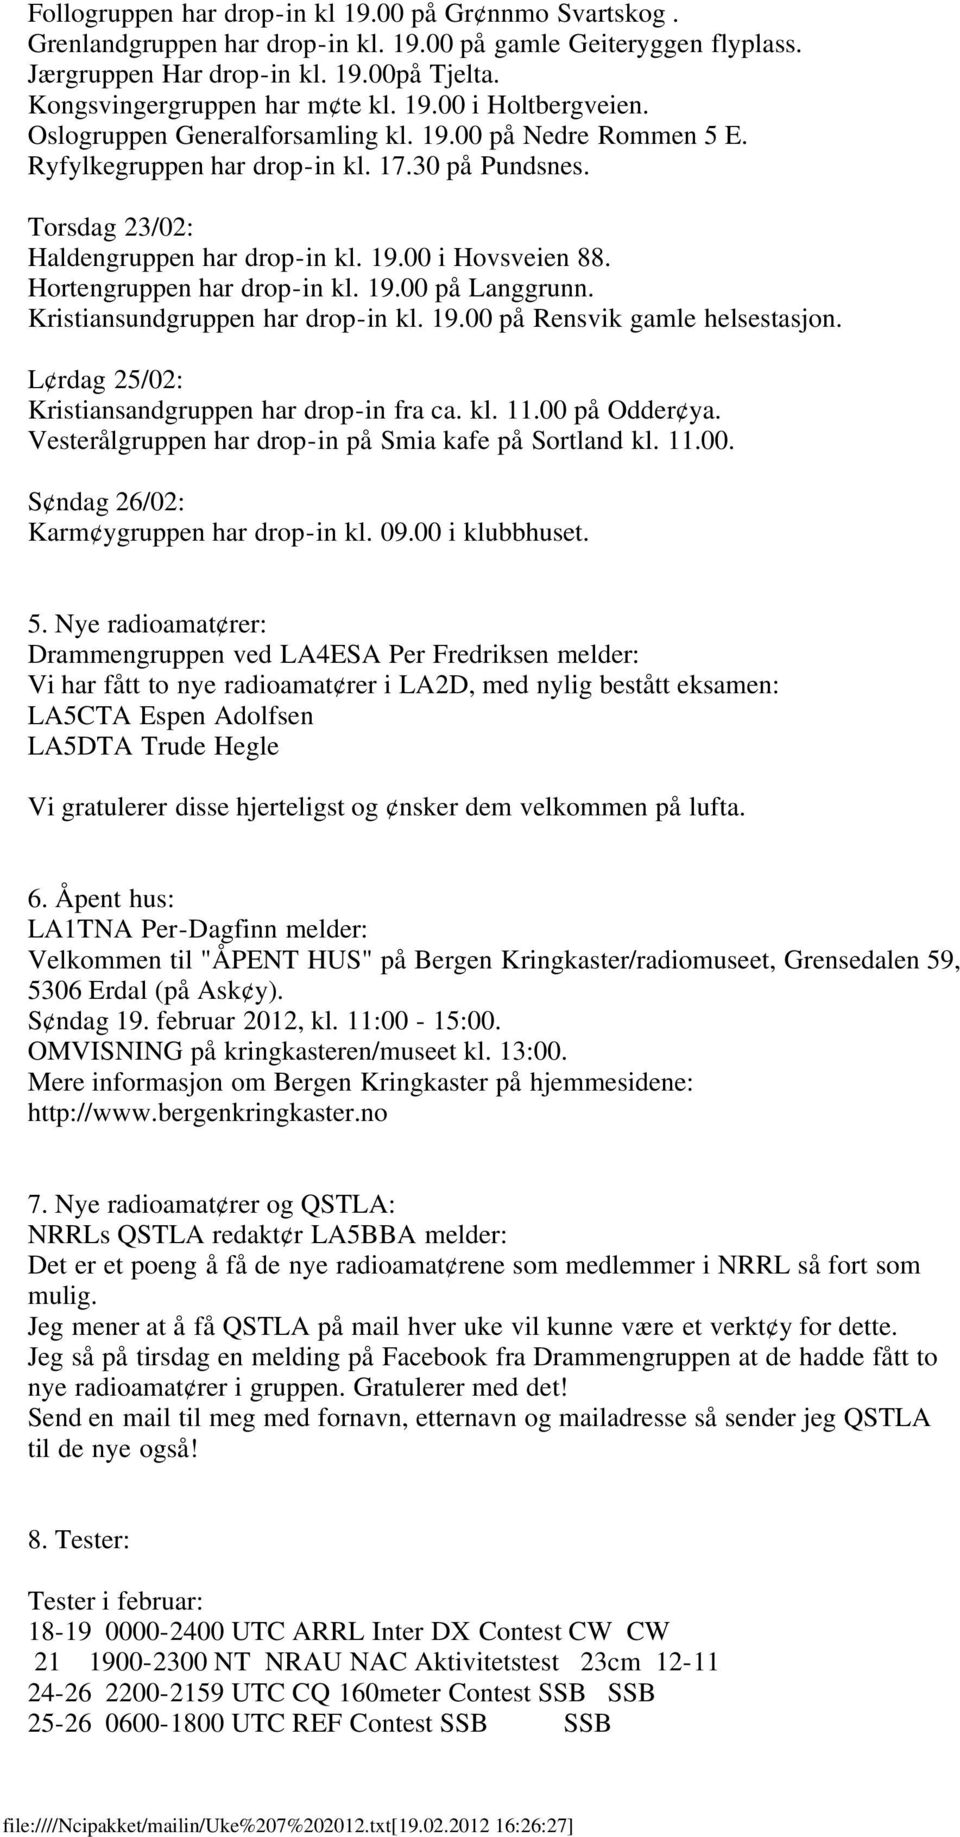 Hortengruppen har drop-in kl. 19.00 på Langgrunn. Kristiansundgruppen har drop-in kl. 19.00 på Rensvik gamle helsestasjon. L rdag 25/02: Kristiansandgruppen har drop-in fra ca. kl. 11.00 på Odder ya.